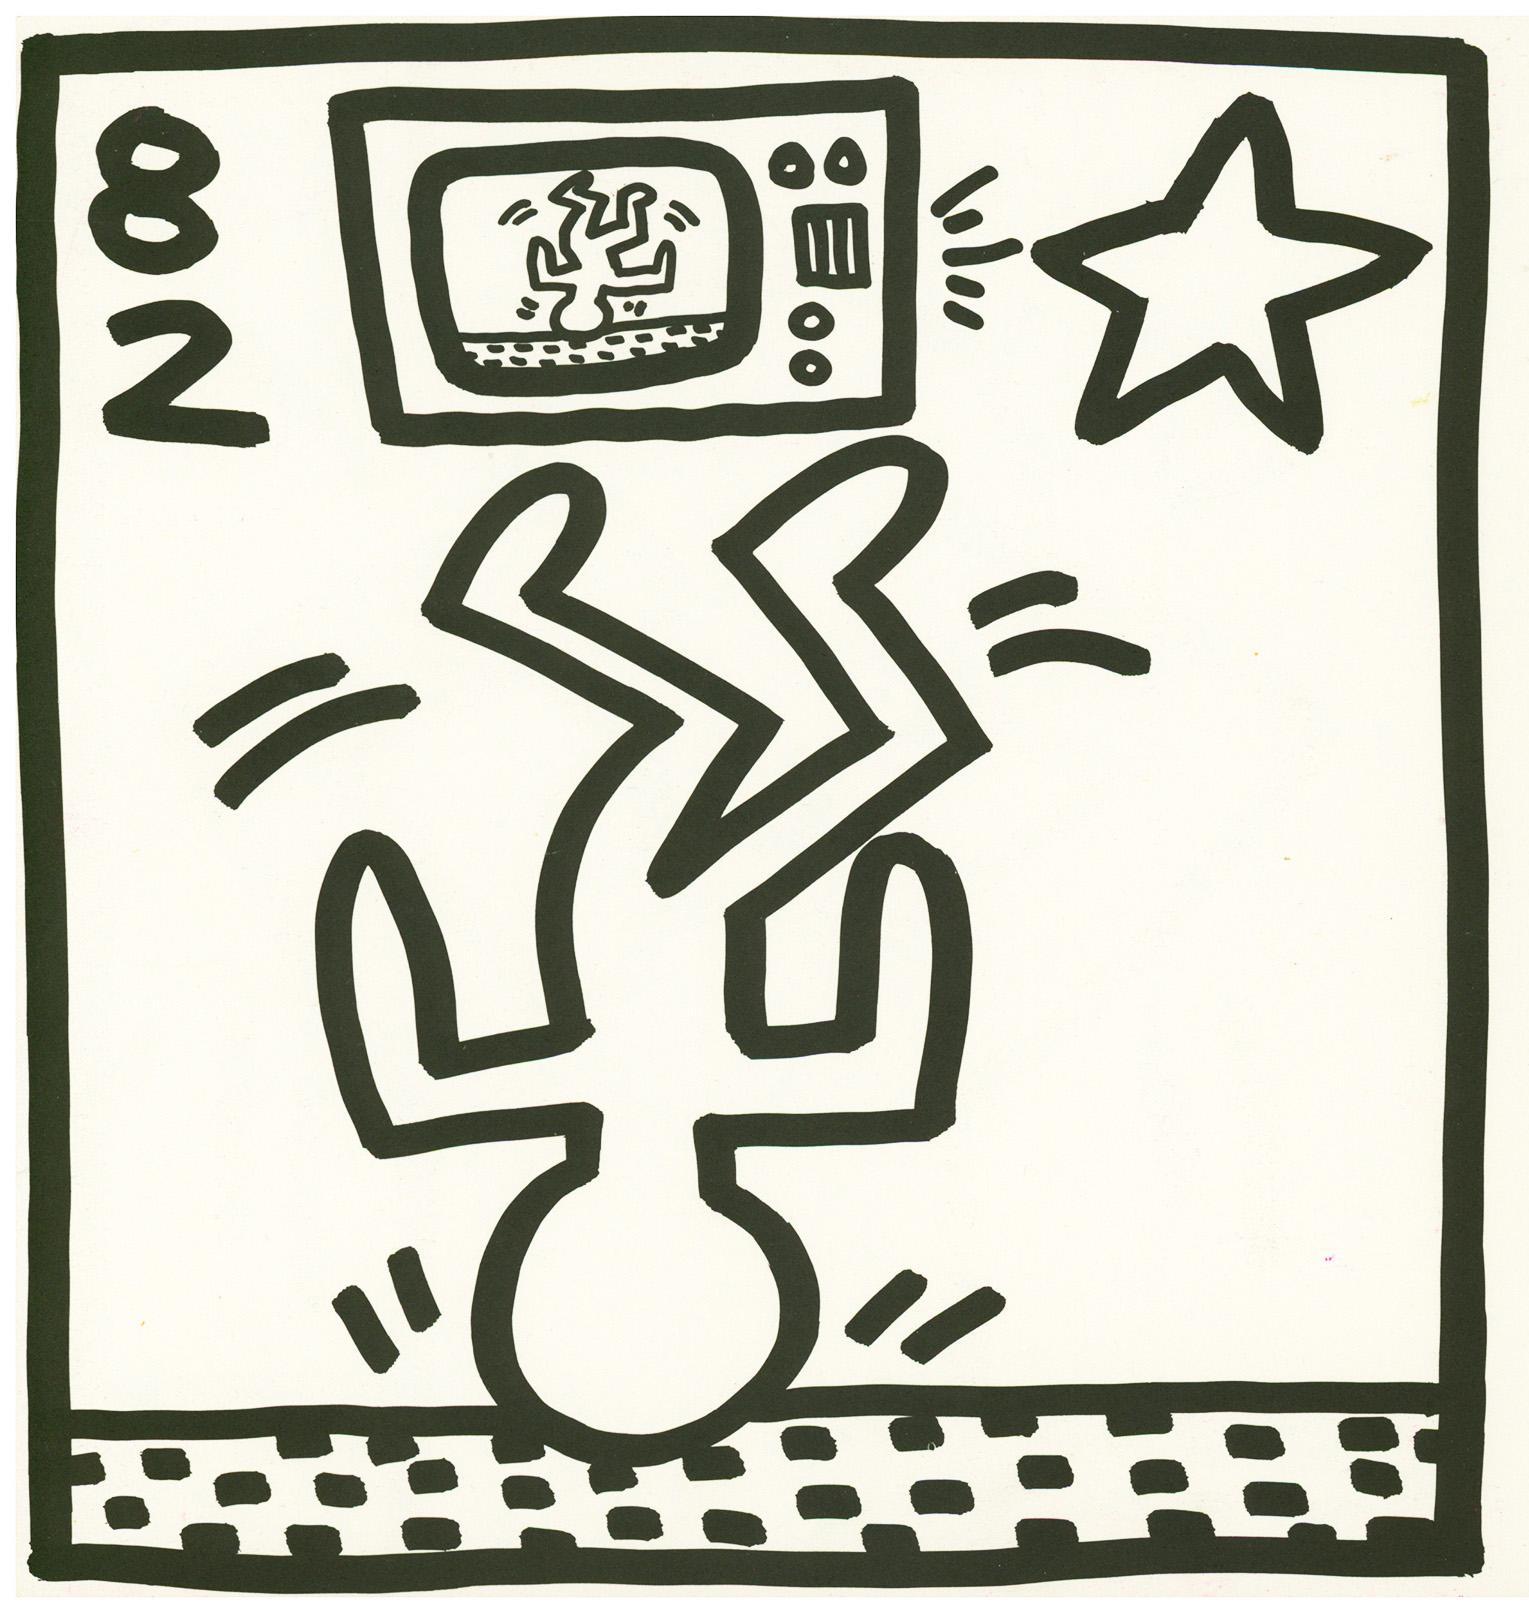 Keith Haring lithograph 1982 (Keith Haring prints)